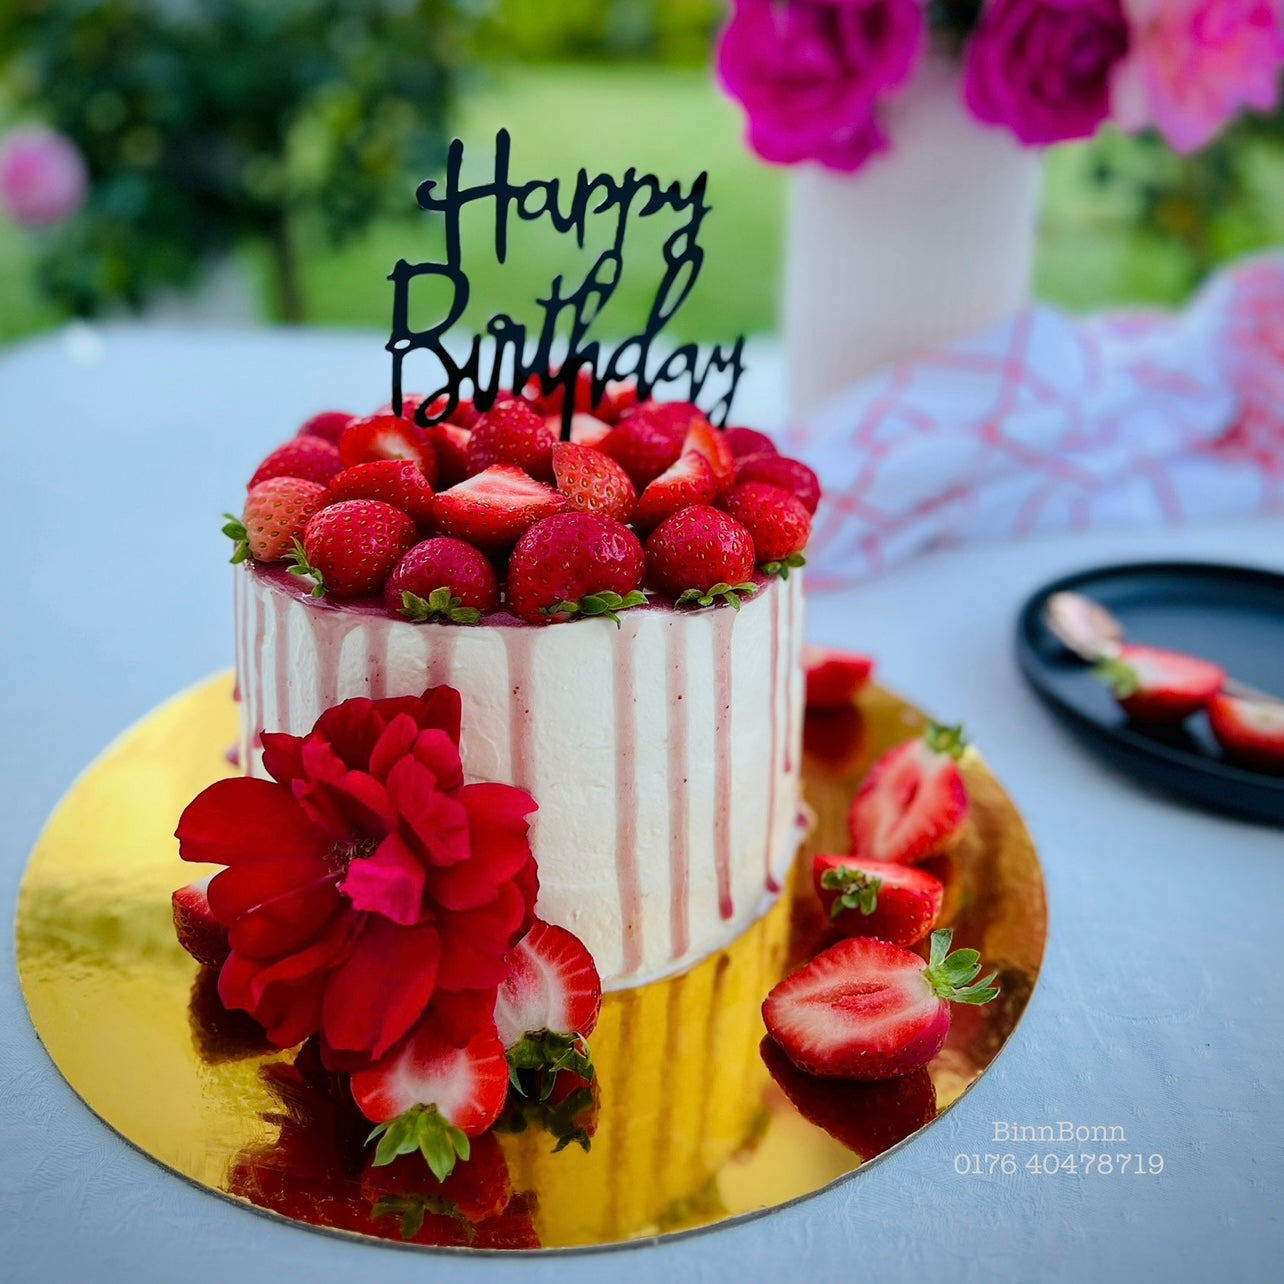 29. Torte "Balka" zum Geburtstag mit frischen Erdbeeren 22 cm